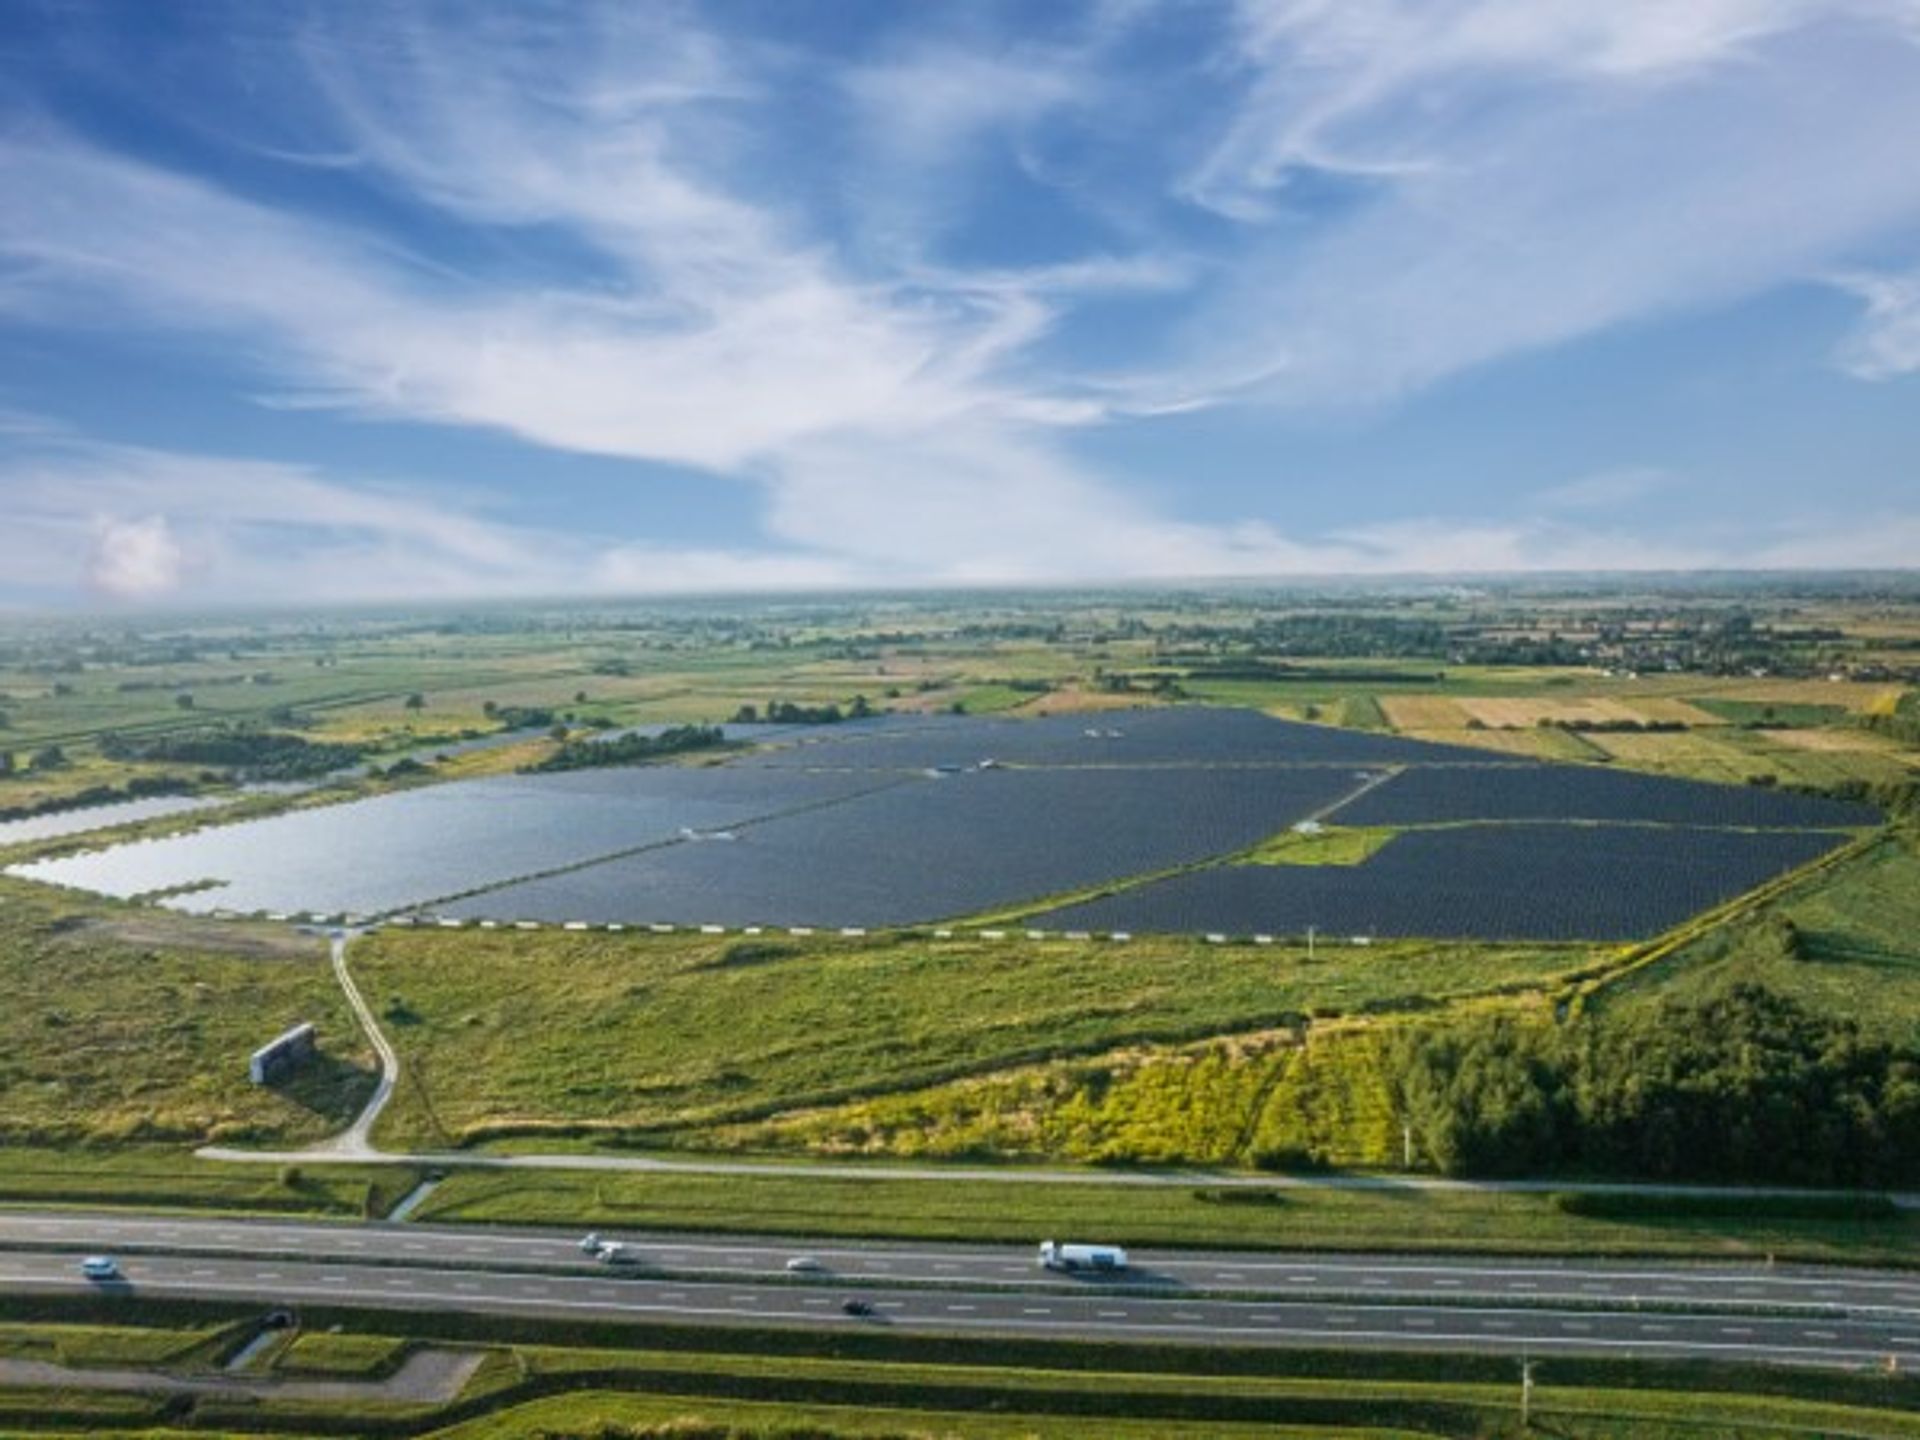 W Małopolsce powstała jedna z największych farm fotowoltaicznych w Polsce